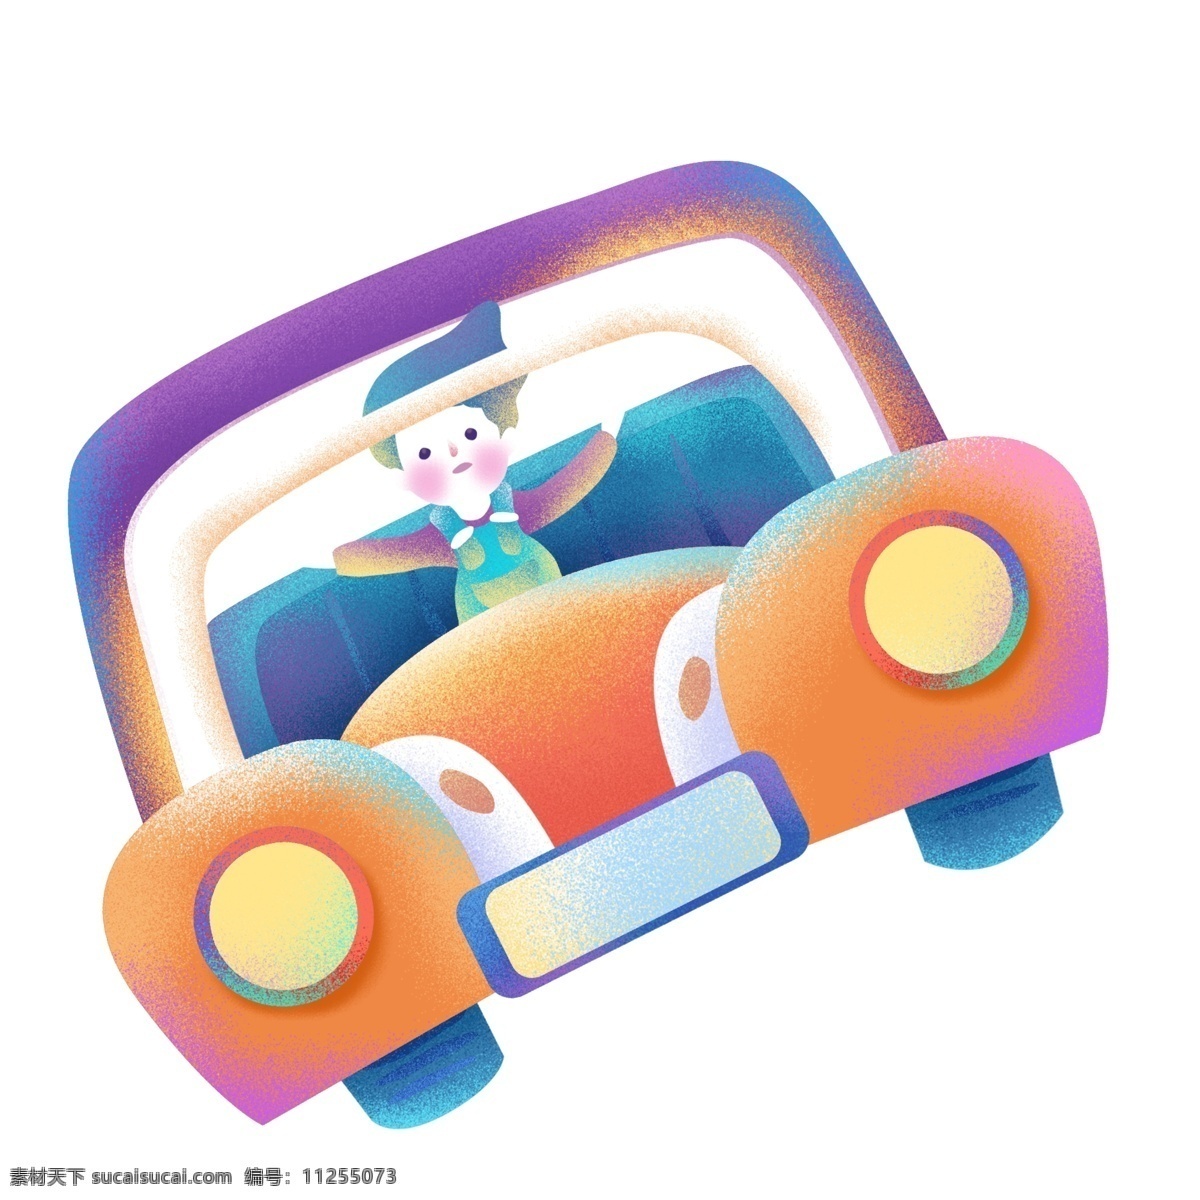 糖果 渐 融 坐在 车上 少年 彩色 卡通 创意 糖果渐融 汽车 男孩 开车 司机 人物